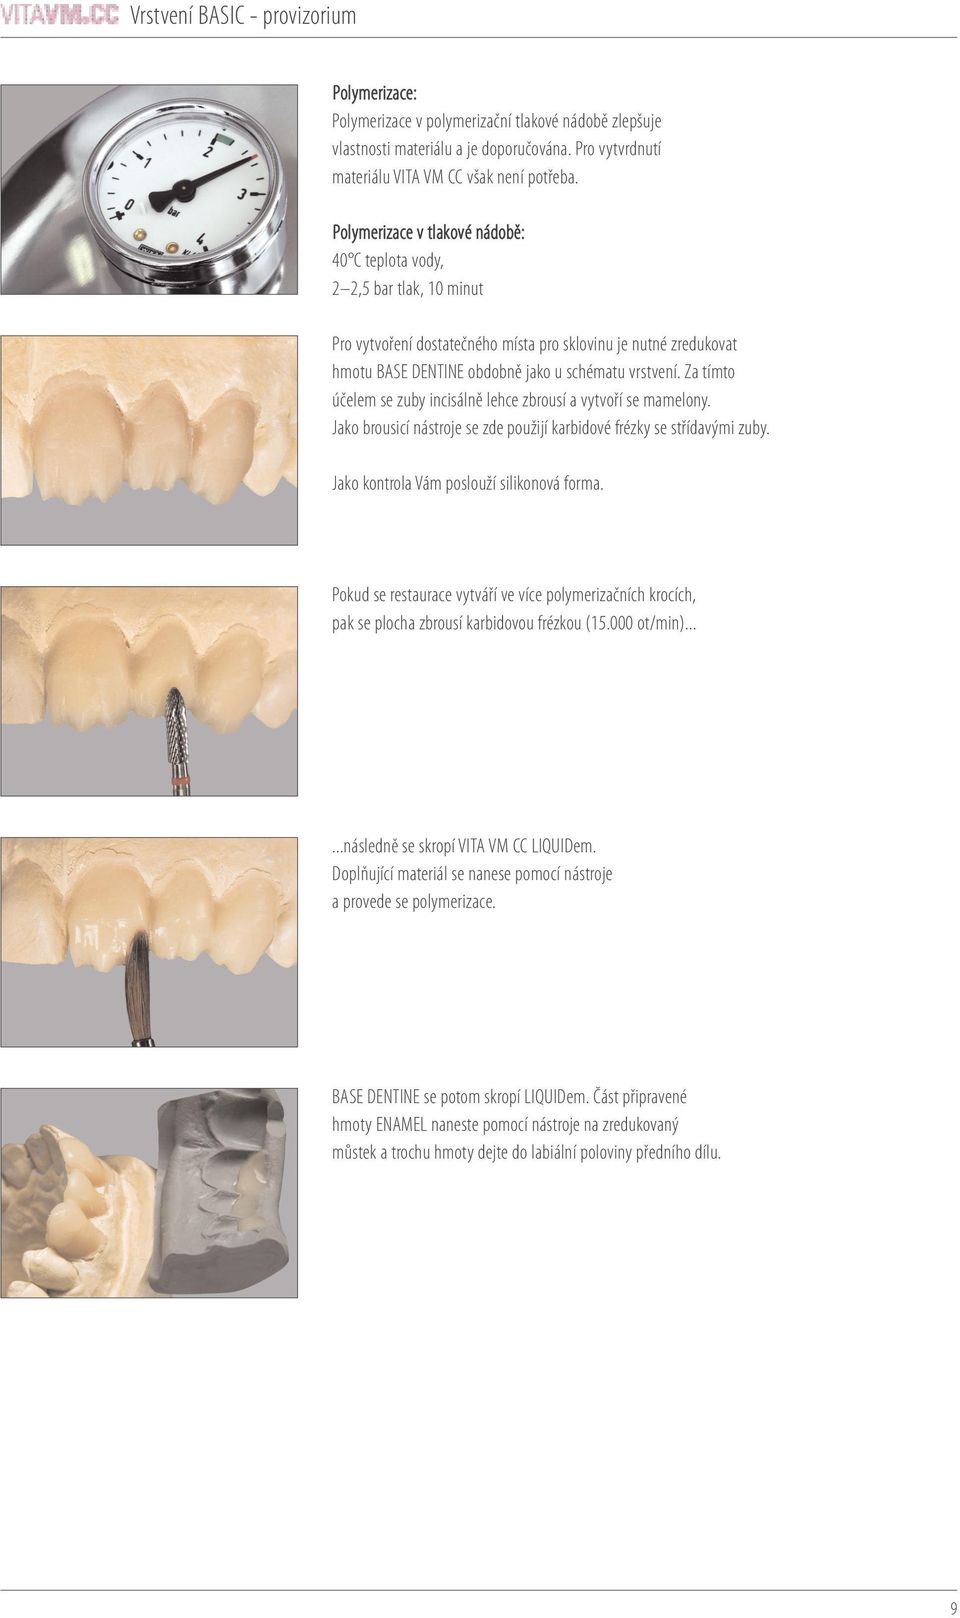 Za tímto účelem se zuby incisálně lehce zbrousí a vytvoří se mamelony. Jako brousicí nástroje se zde použijí karbidové frézky se střídavými zuby. Jako kontrola Vám poslouží silikonová forma.